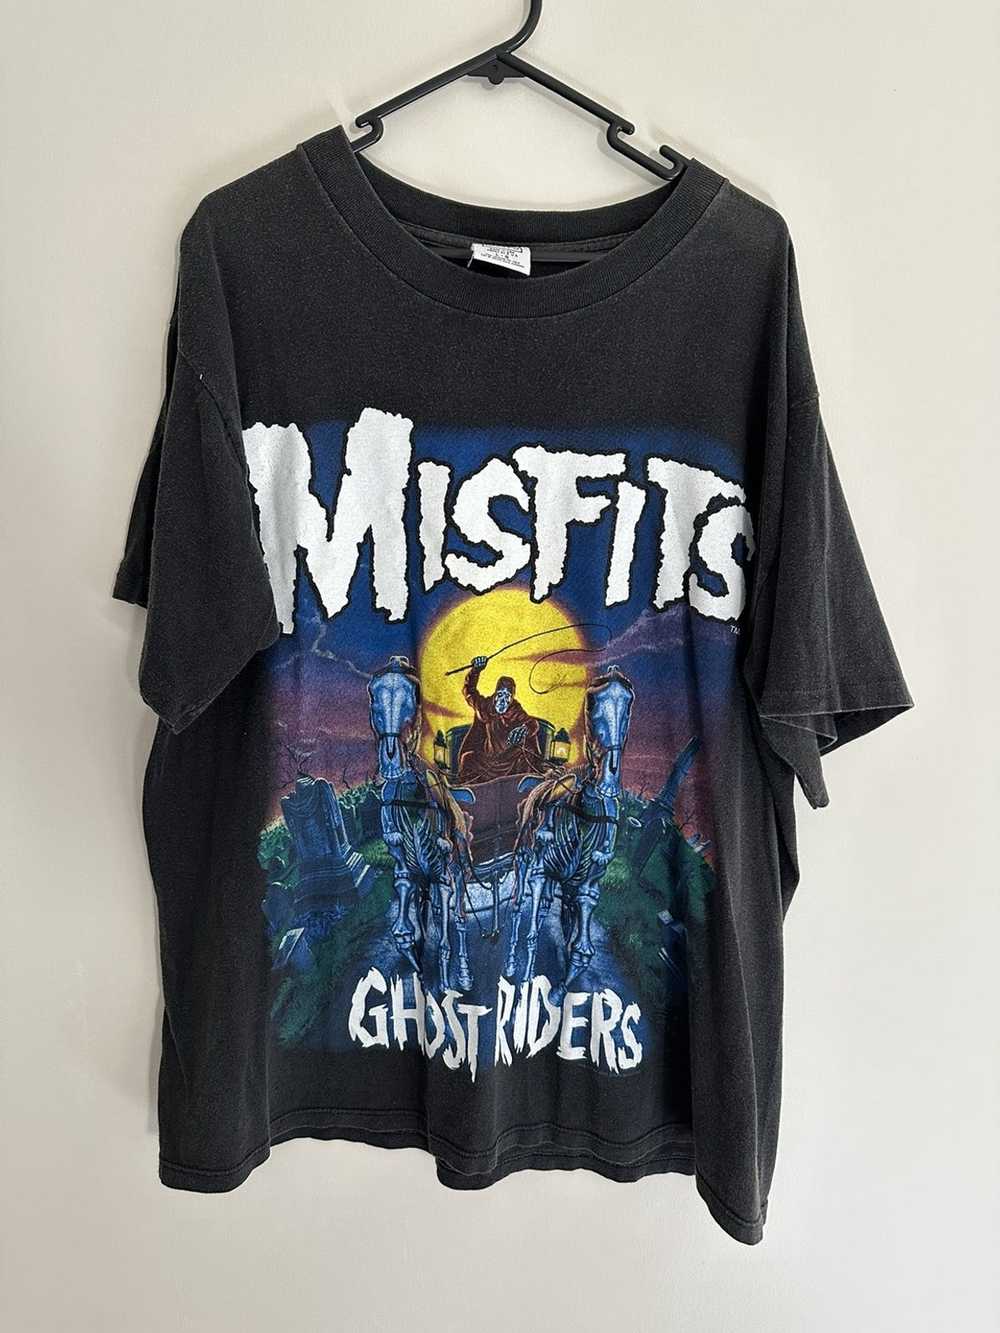 Misfits Misfits ghost riders 1995 - image 1